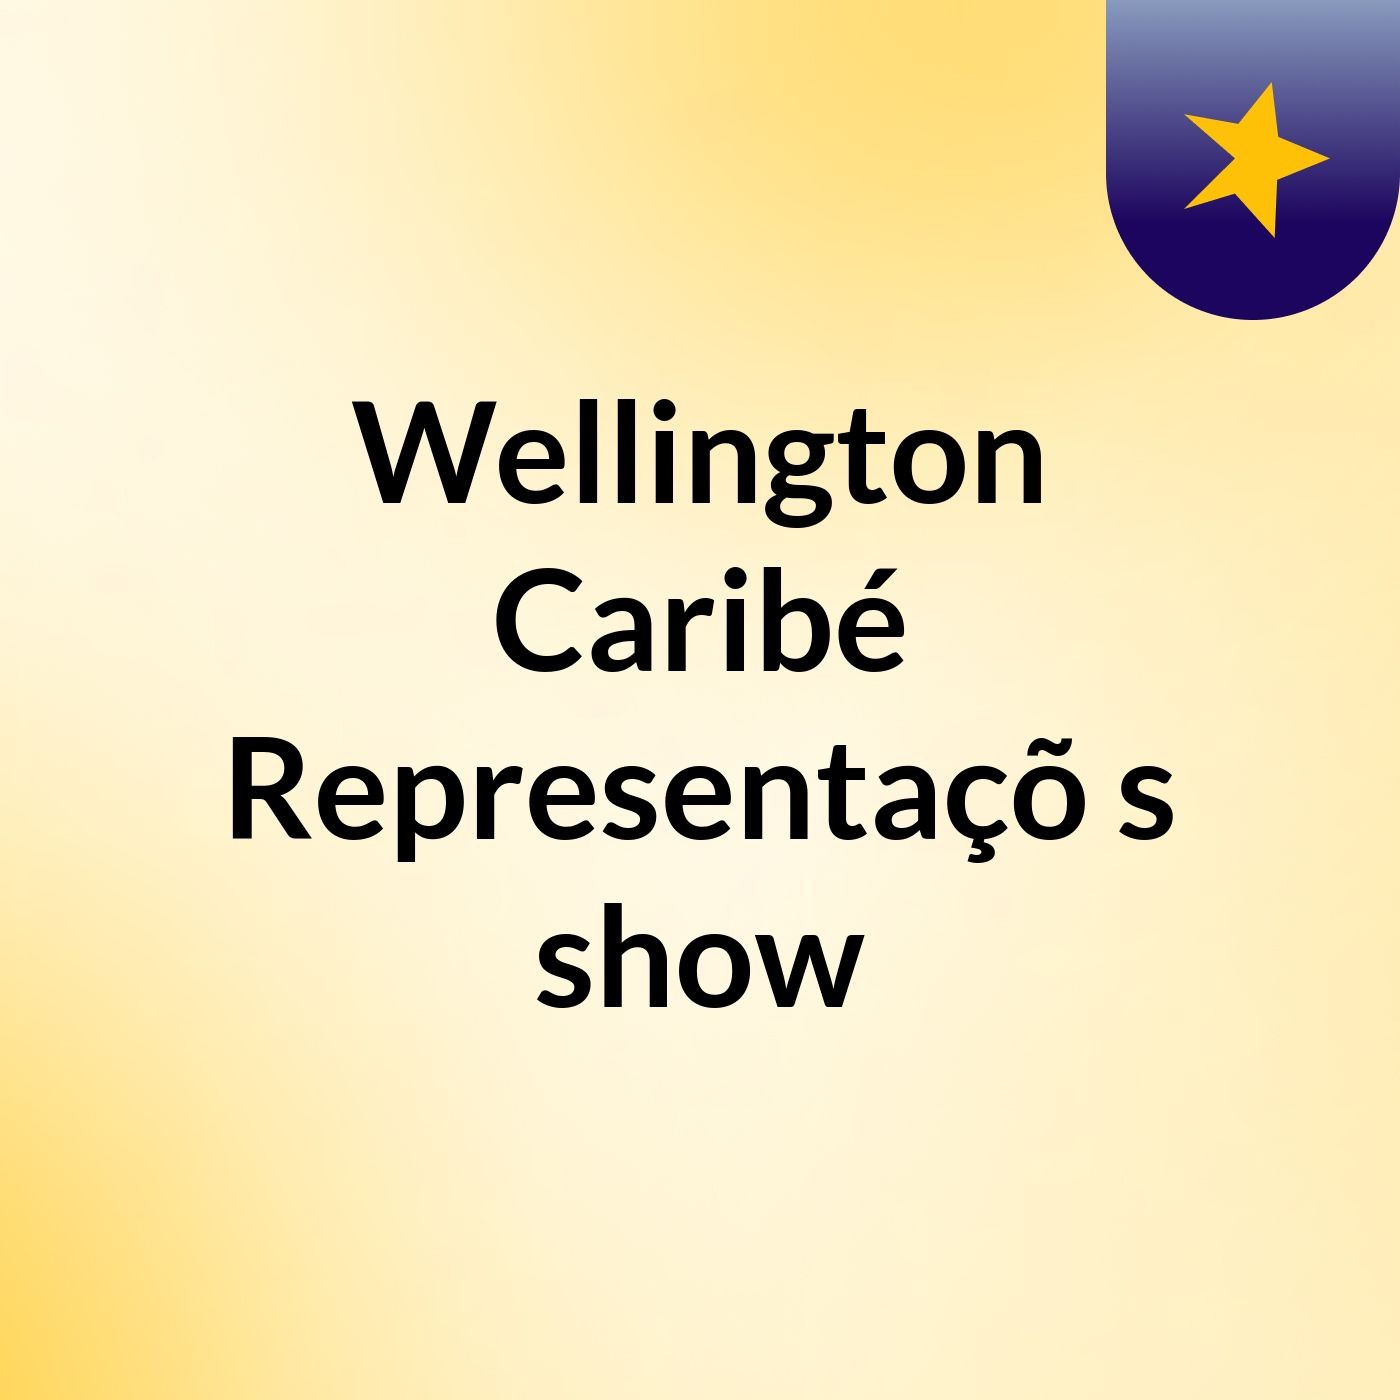 Wellington Caribé Representaçõ's show